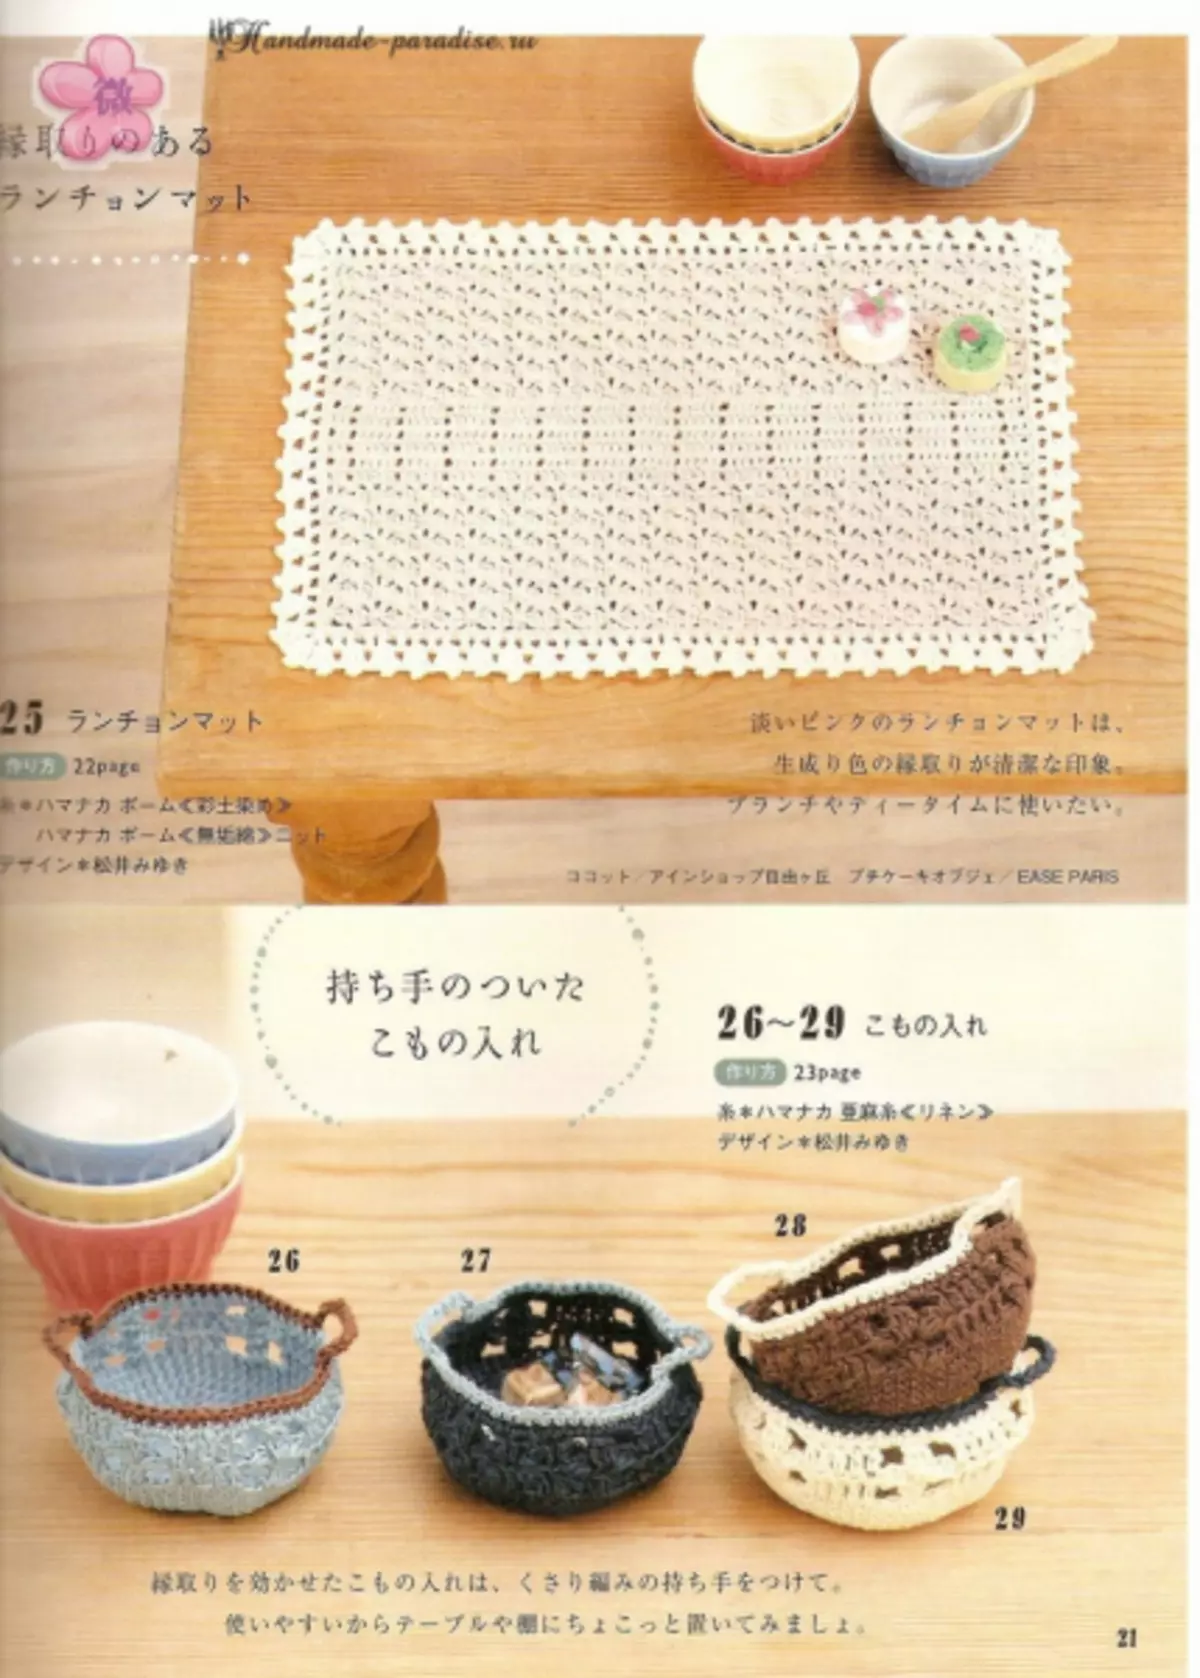 Καλοκαιρινά αξεσουάρ βελονάκι. Ιαπωνικό περιοδικό με συστήματα